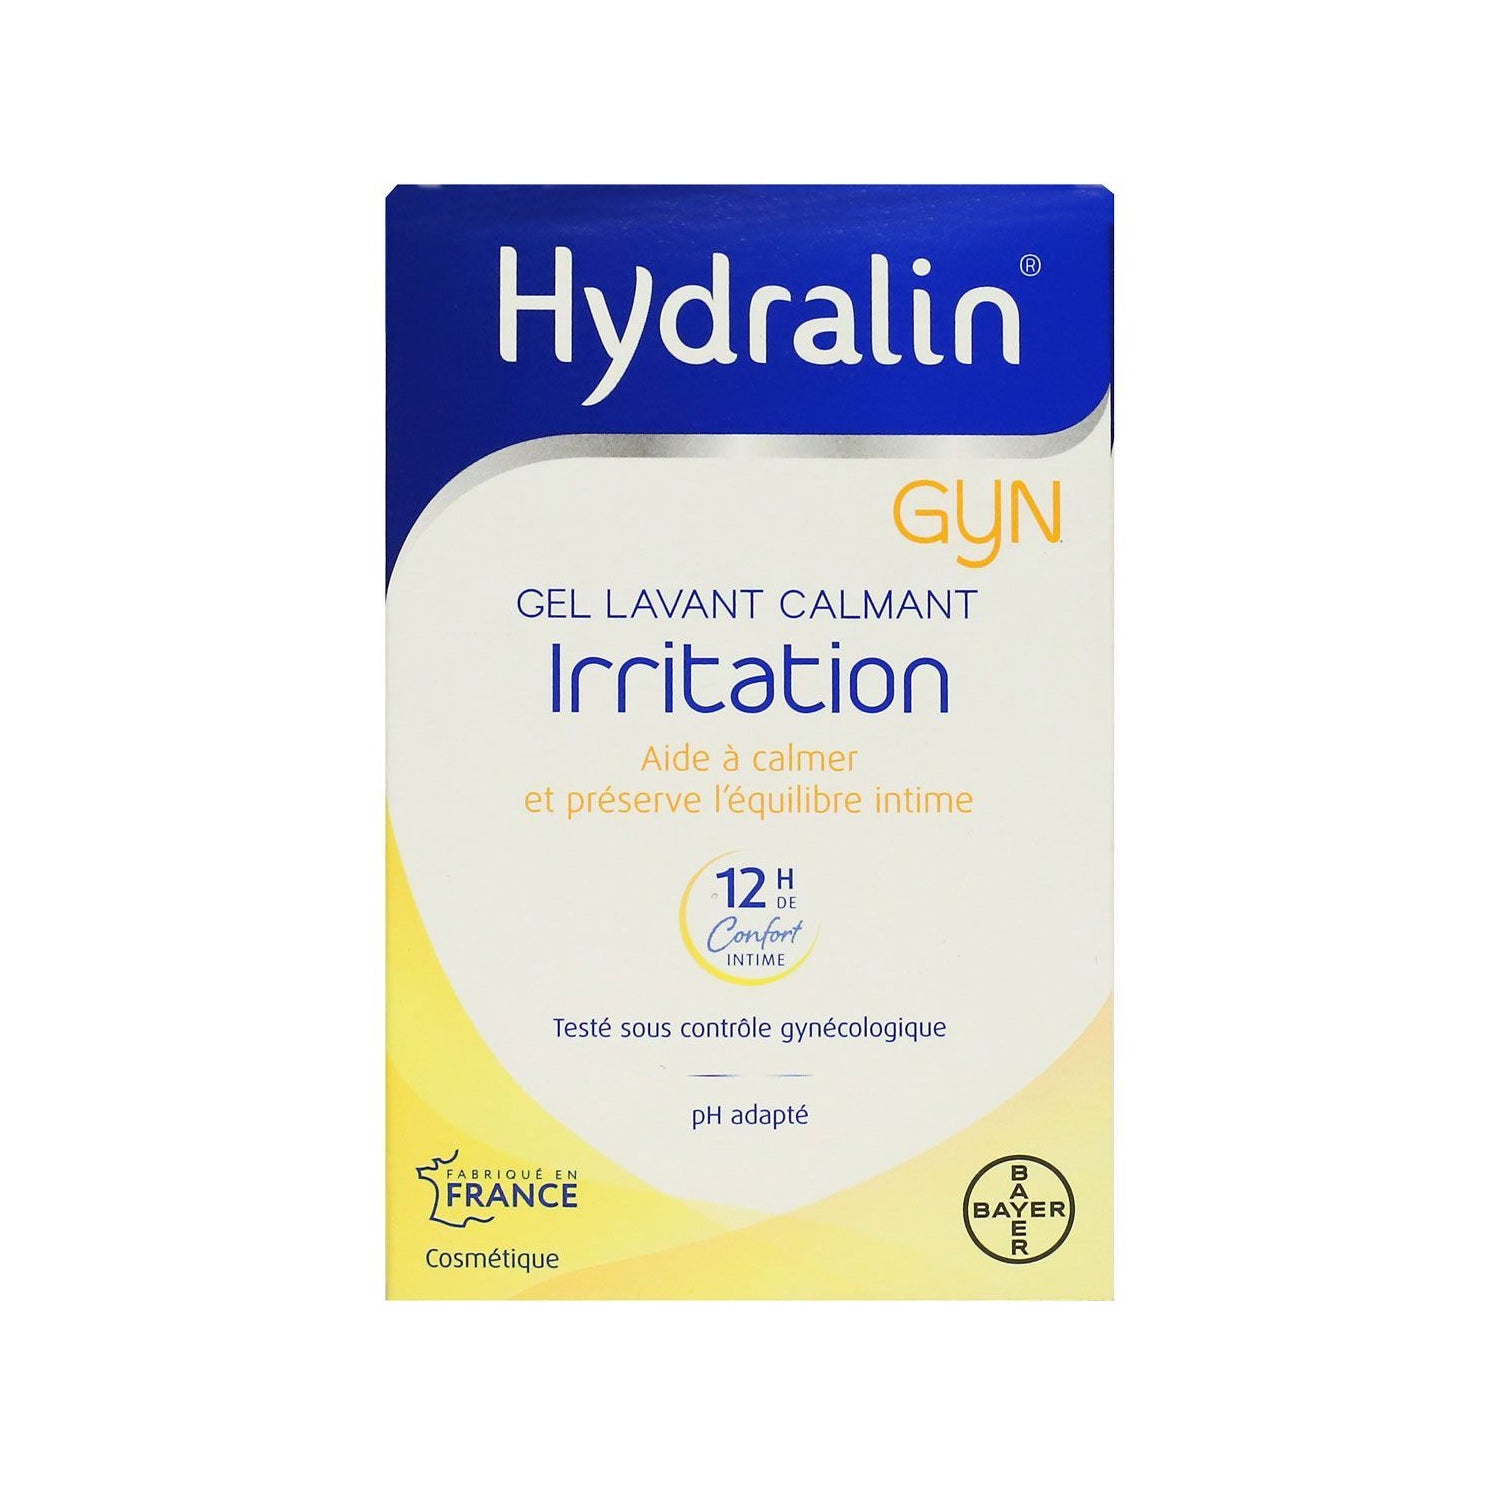 HYDRALIN Gyn irritation gel calmant - Parapharmacie Prado Mermoz